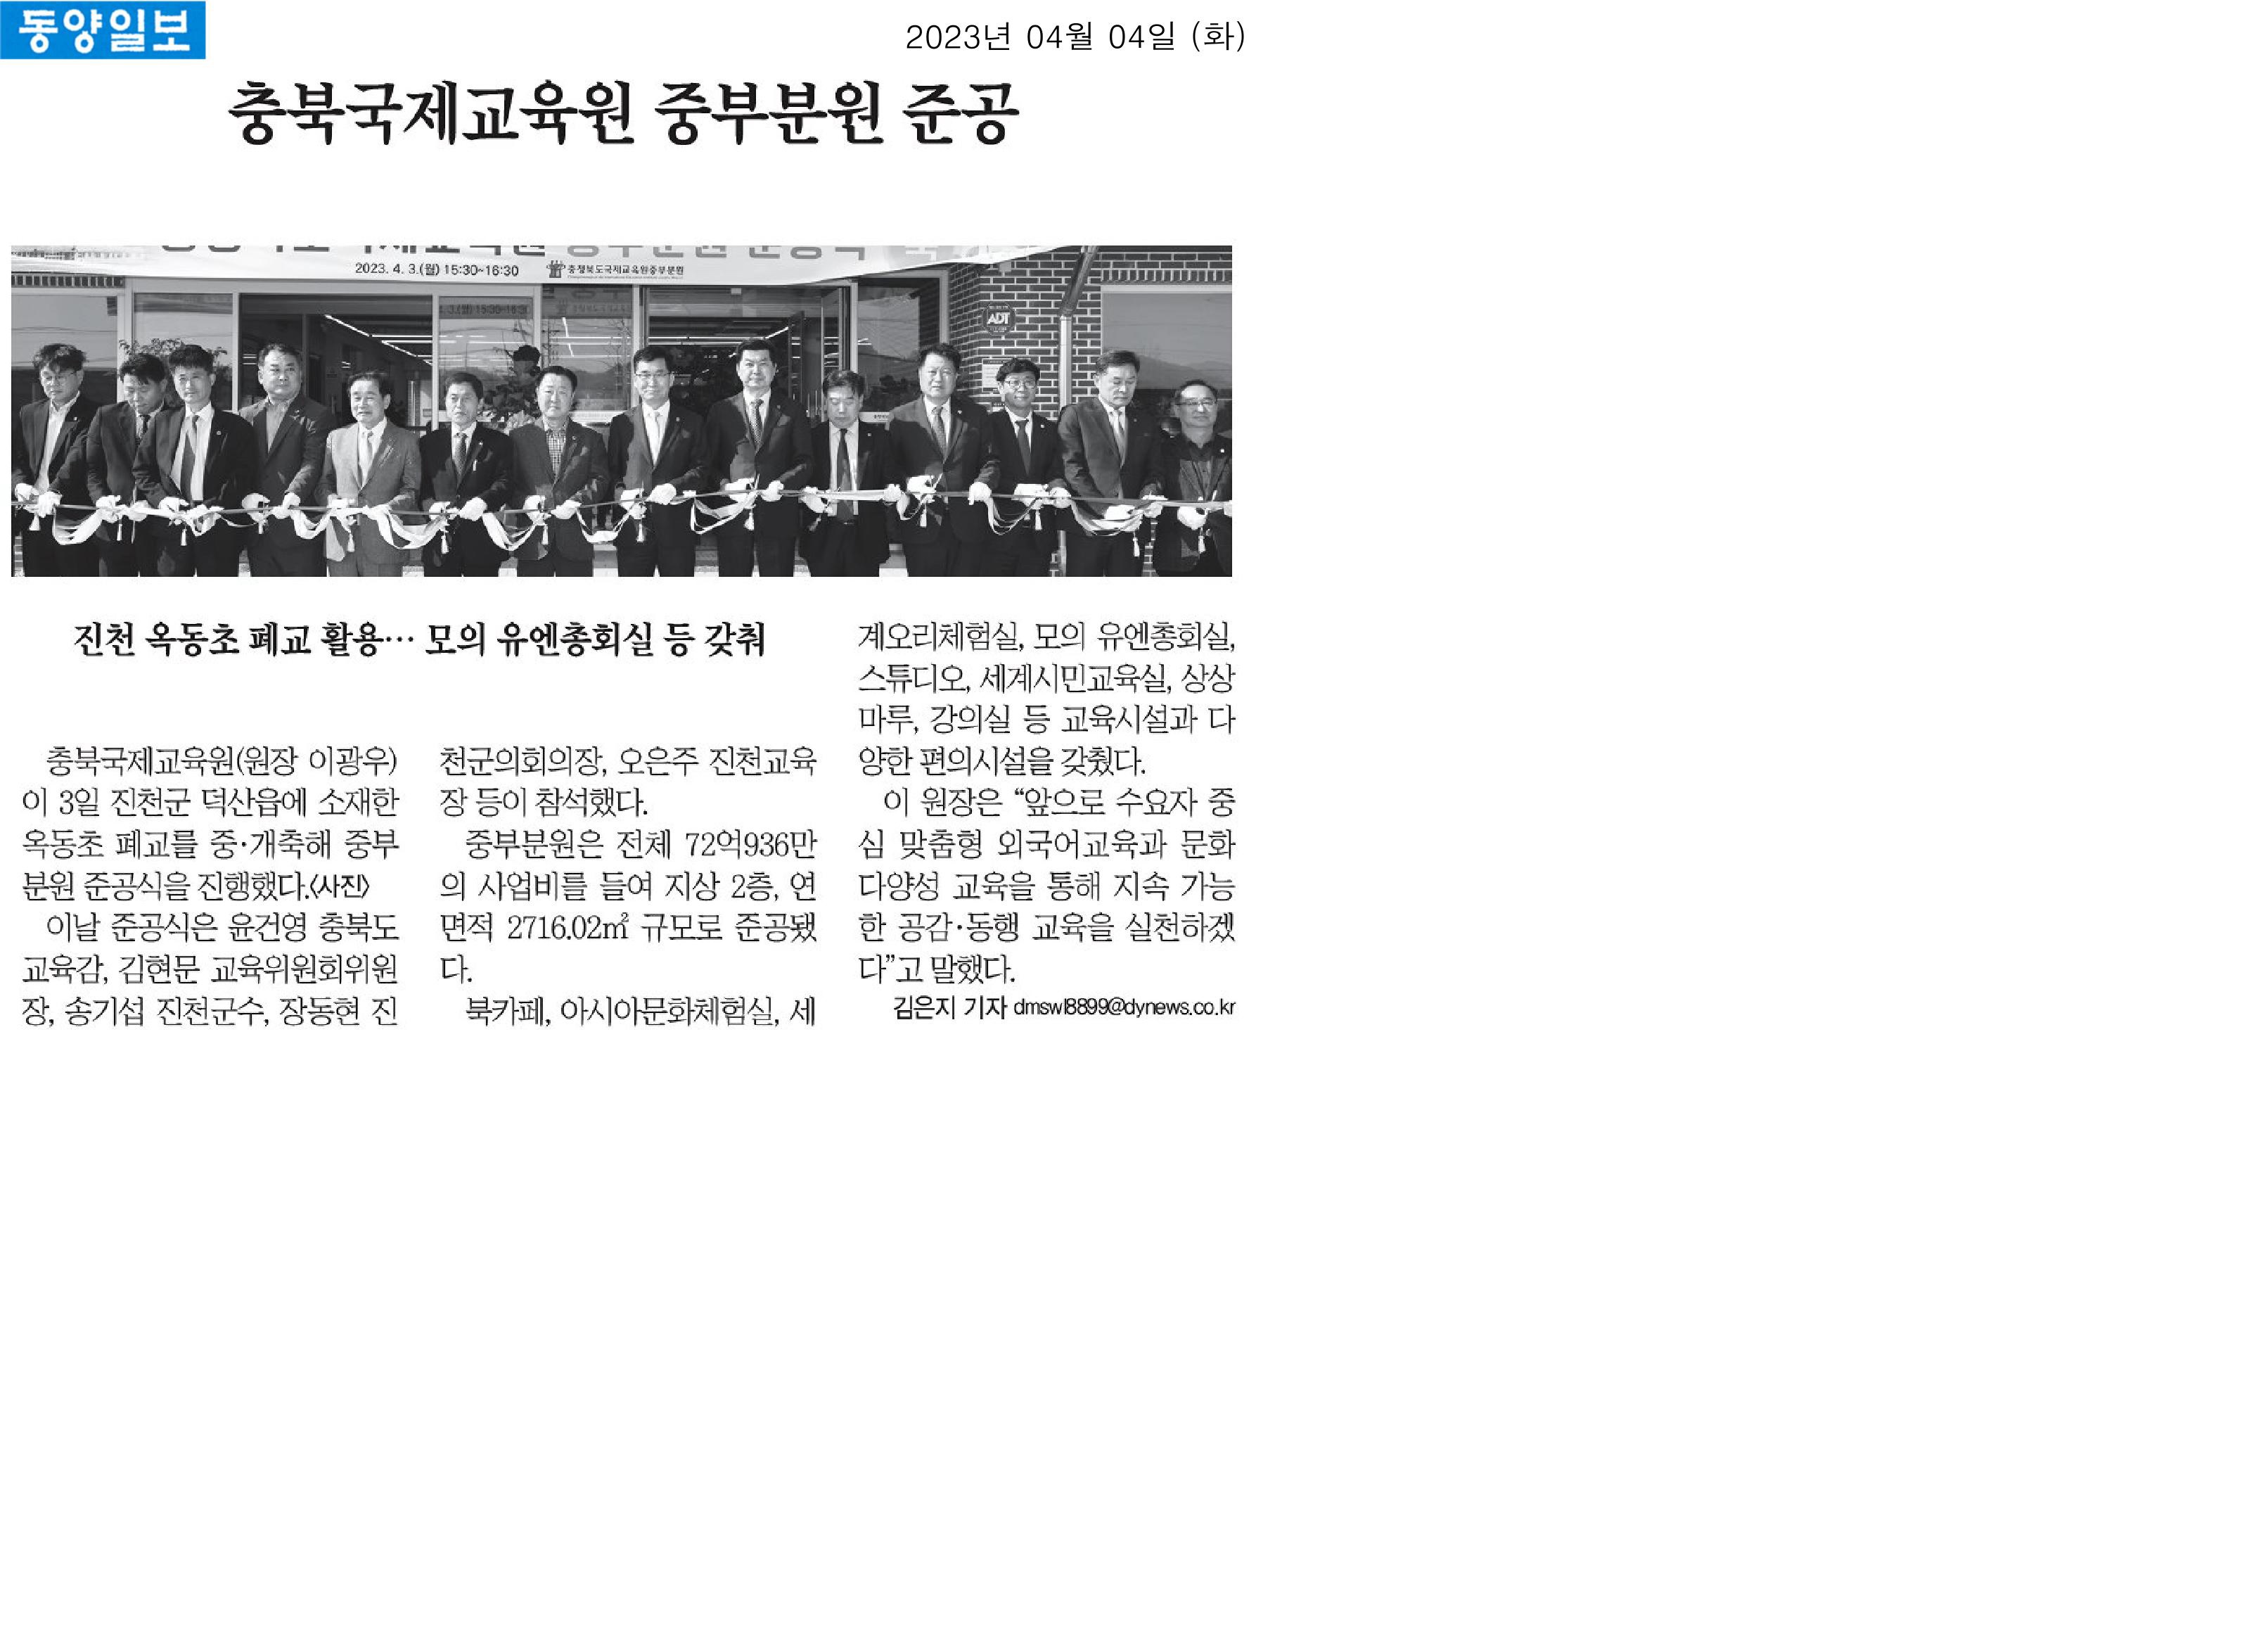 김현문,  이정범, 박재주 의원, 충북국제교육원 준공식 참석 - 3